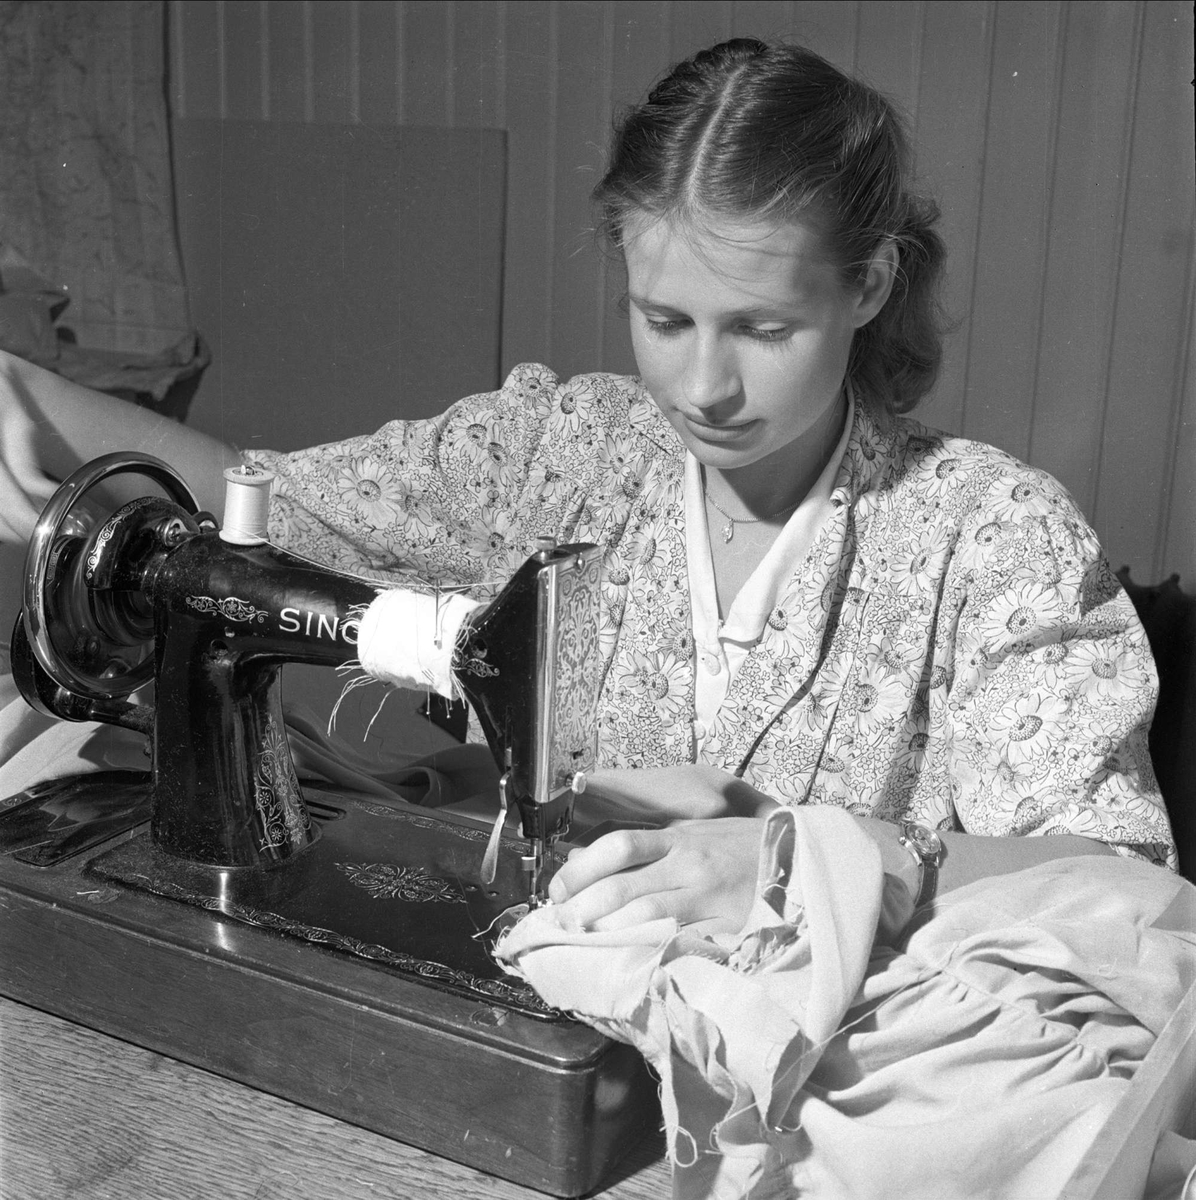 Student ved symaskin. August 1950. Studentrevy, forberedelser.